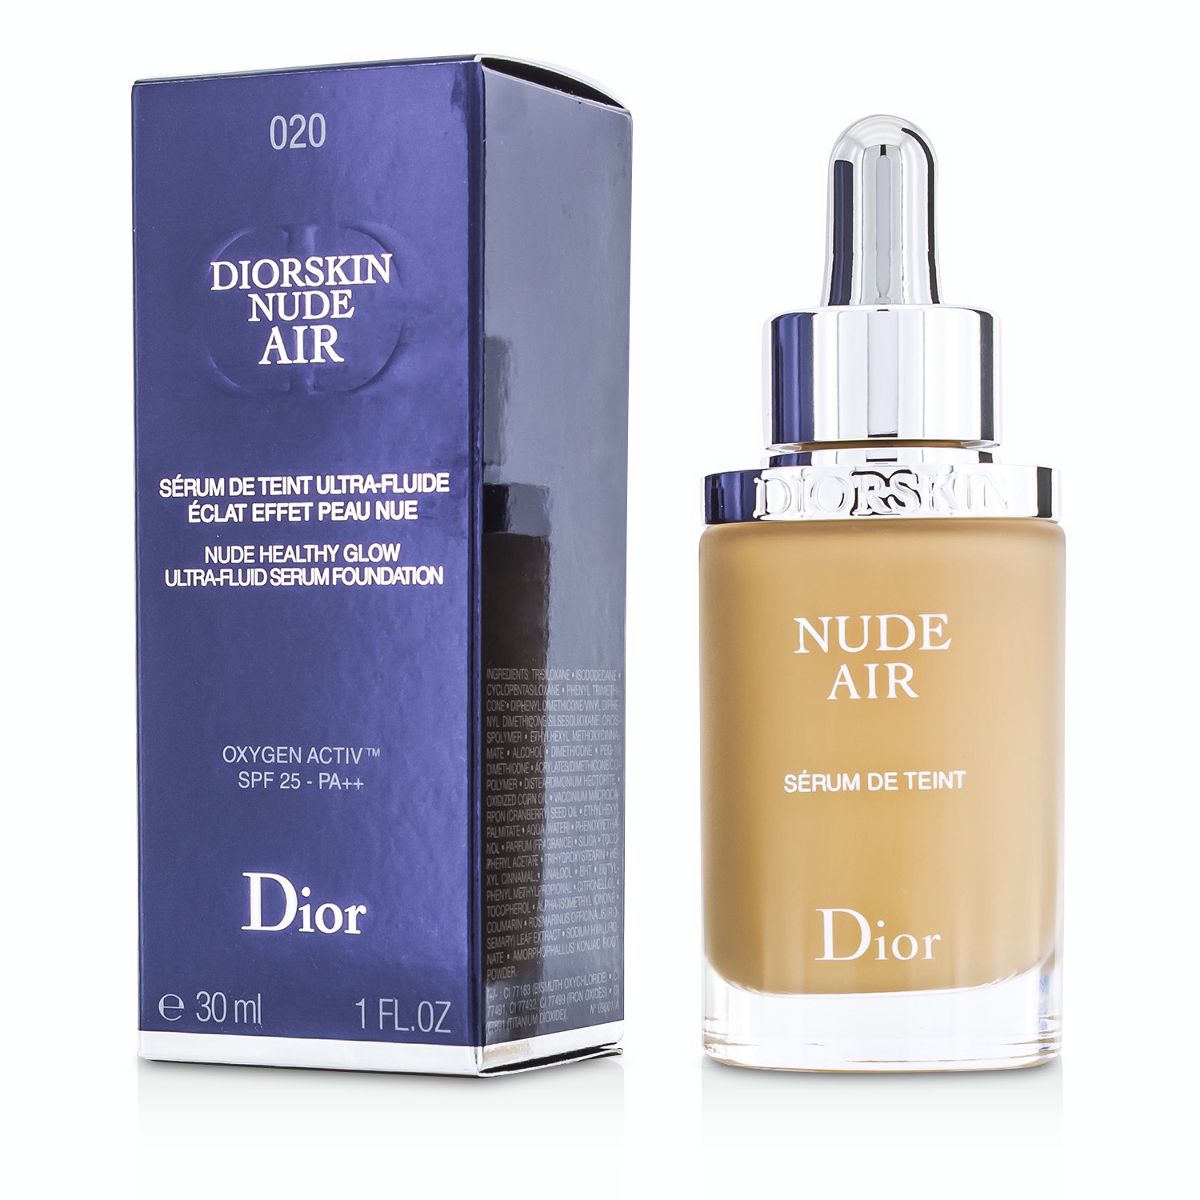 Christian Dior Diorskin Nude Air Serum de Teint